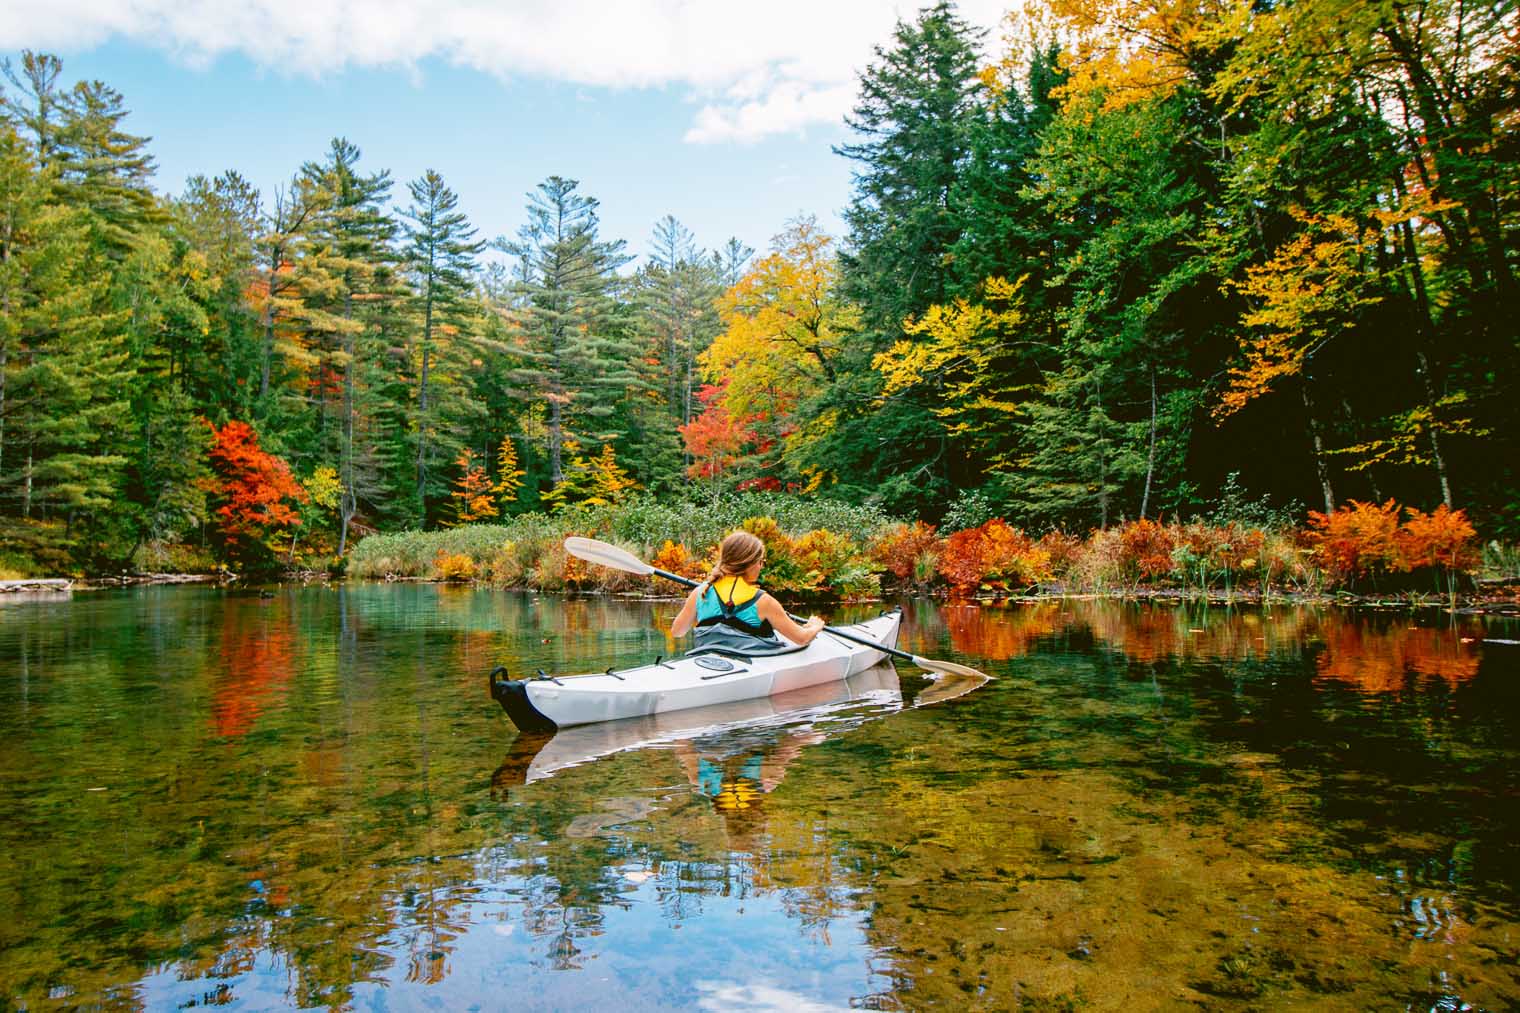 Megan kayaking with fall foliage around